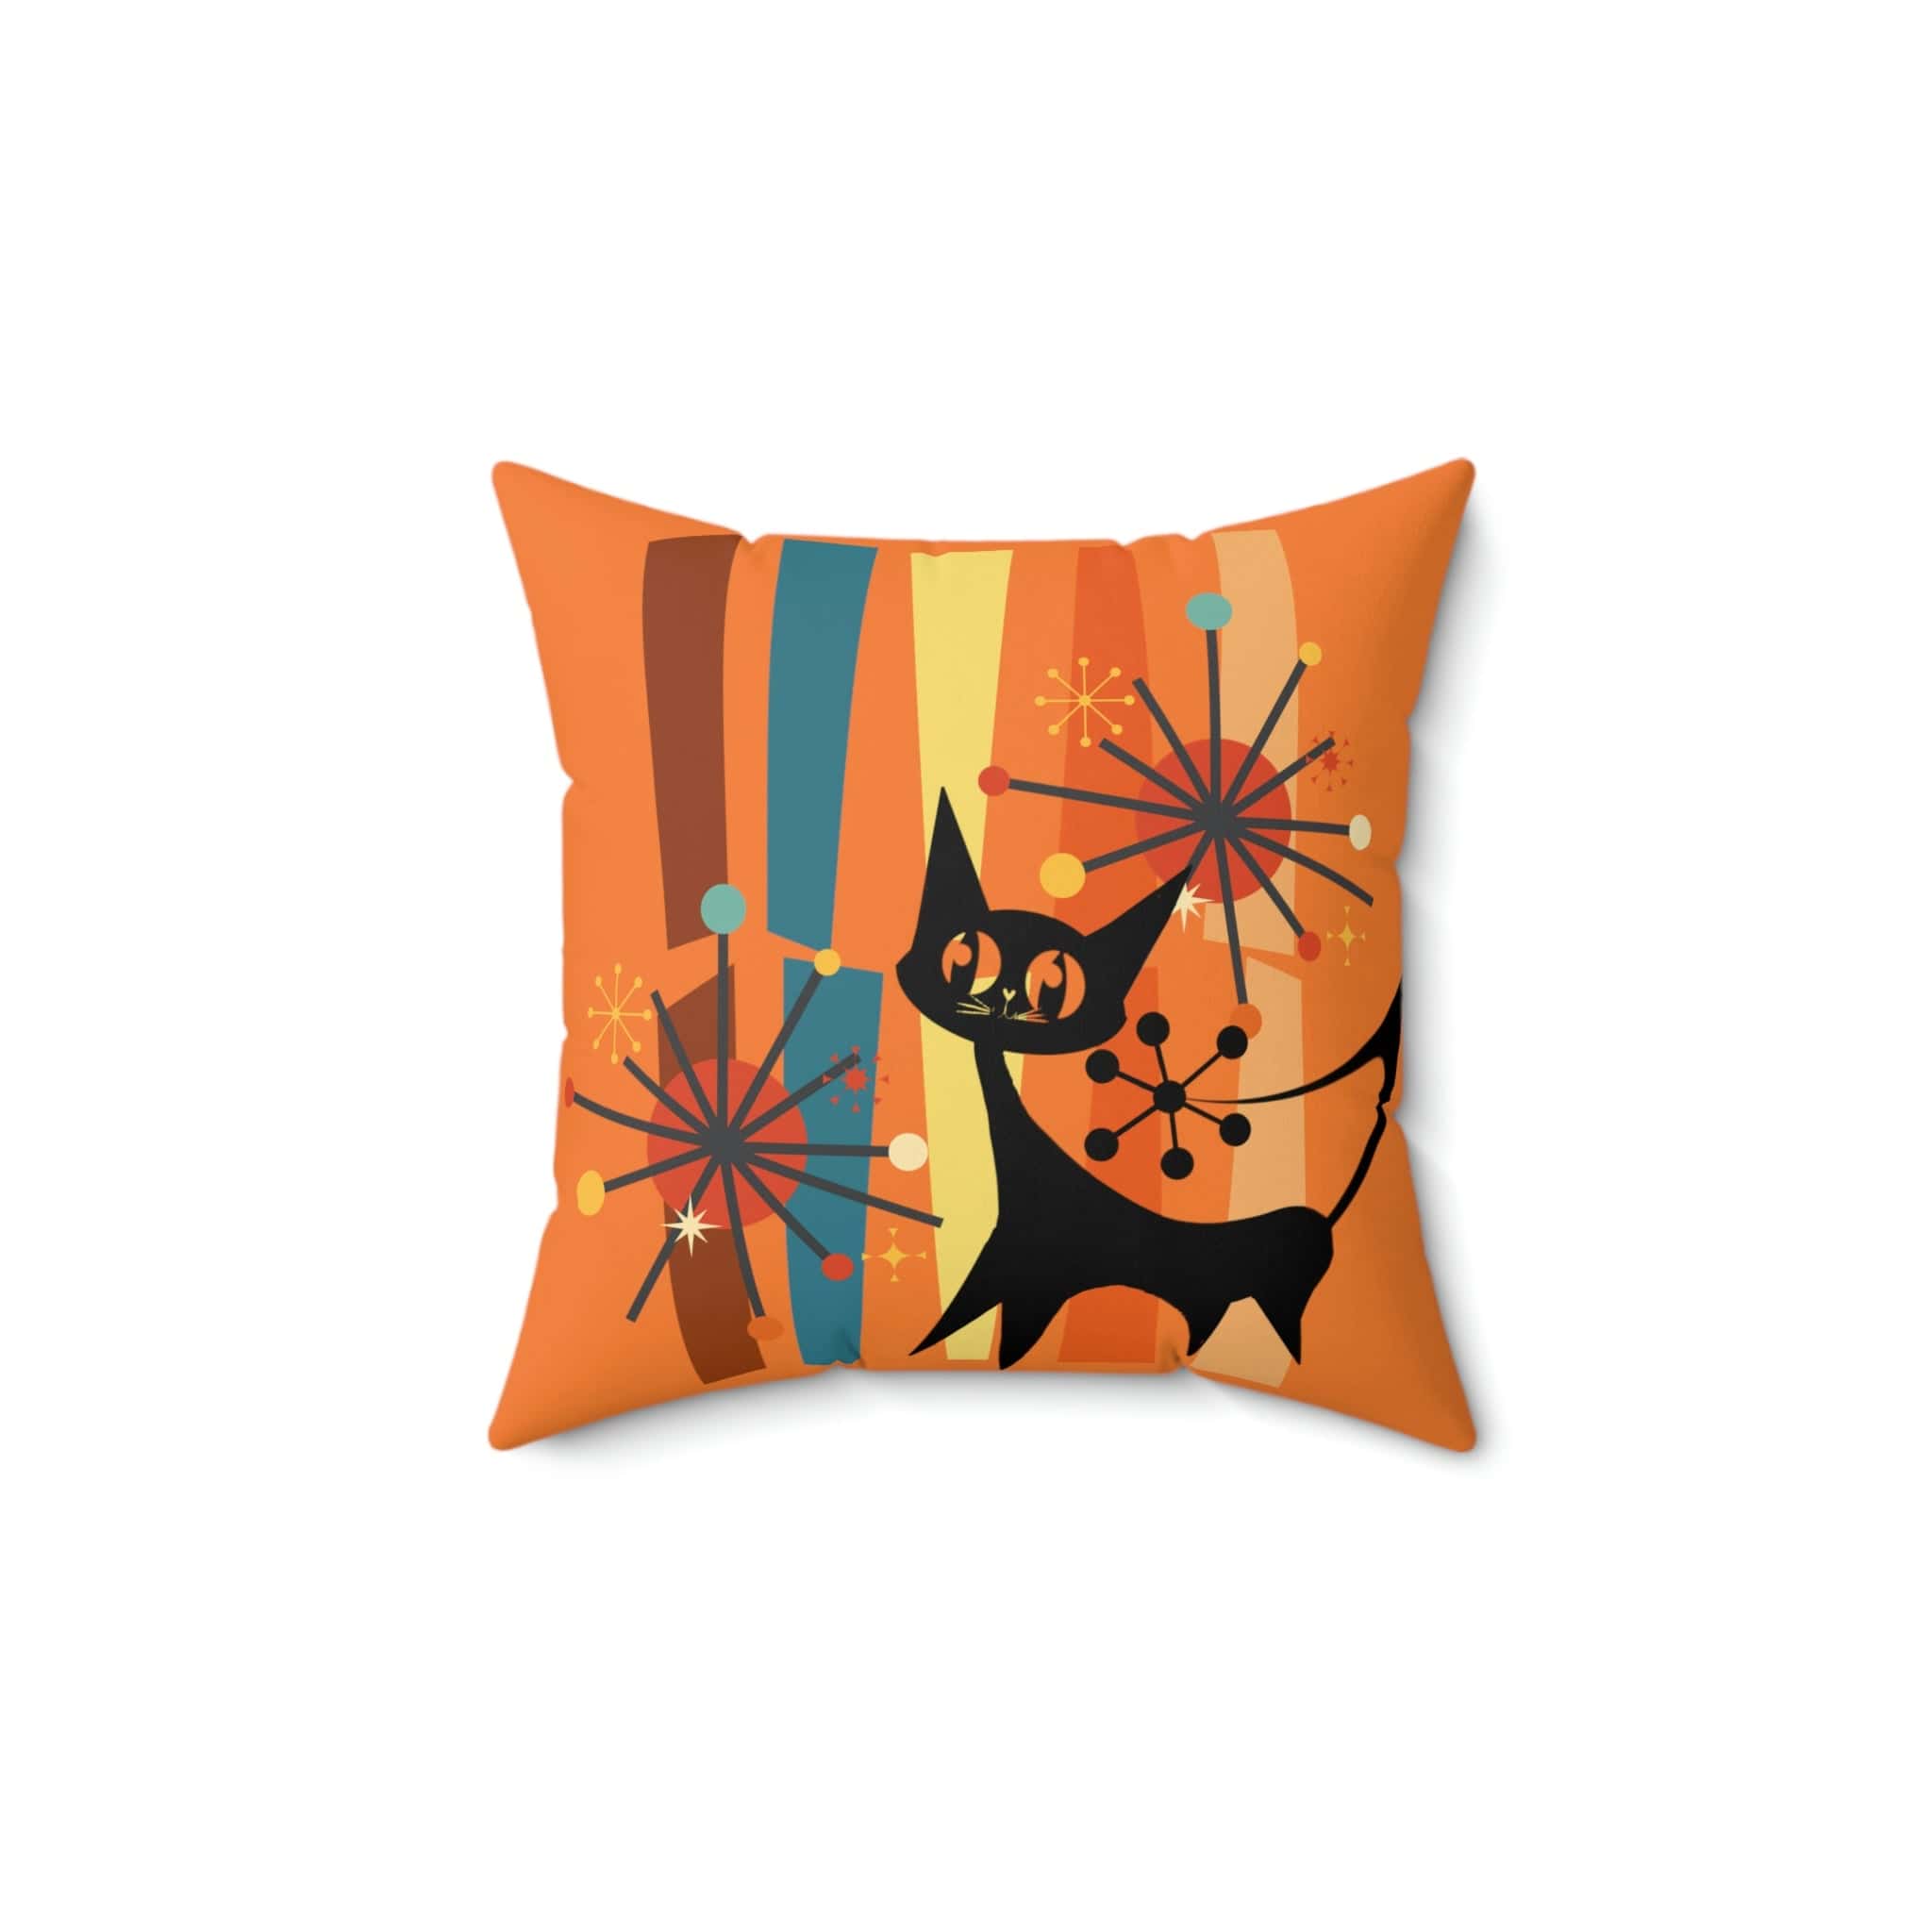 Atomic Cat, Retro Orange, Geometric, Starburst, MCM Black Cat Lover Gift Pillow Cover Home Decor 14&quot; × 14&quot;